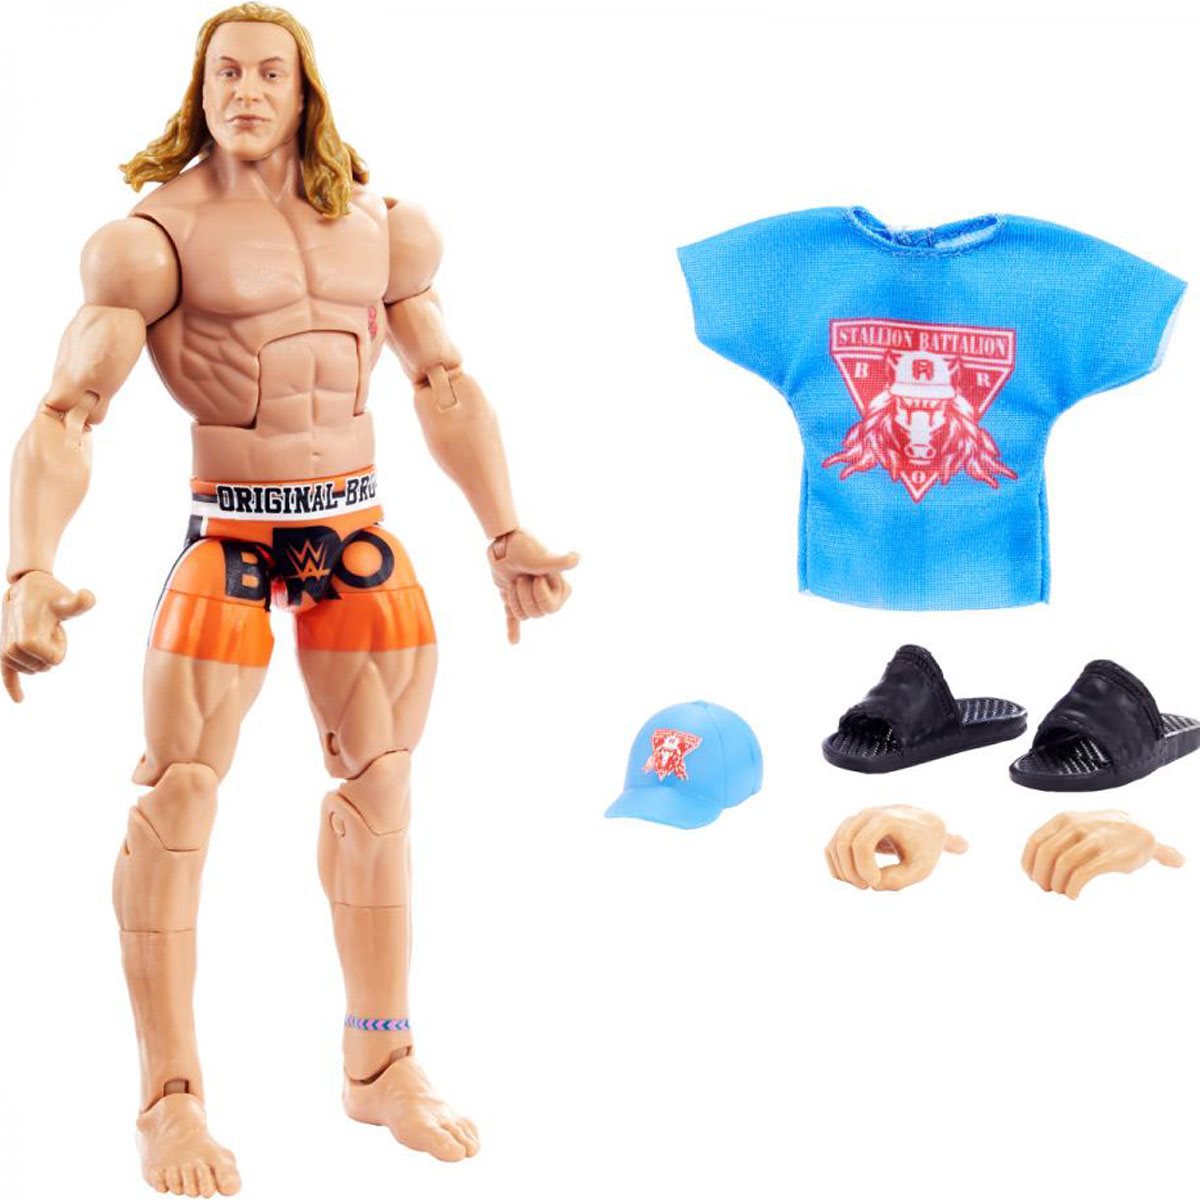  Mattel WWE Action Figures